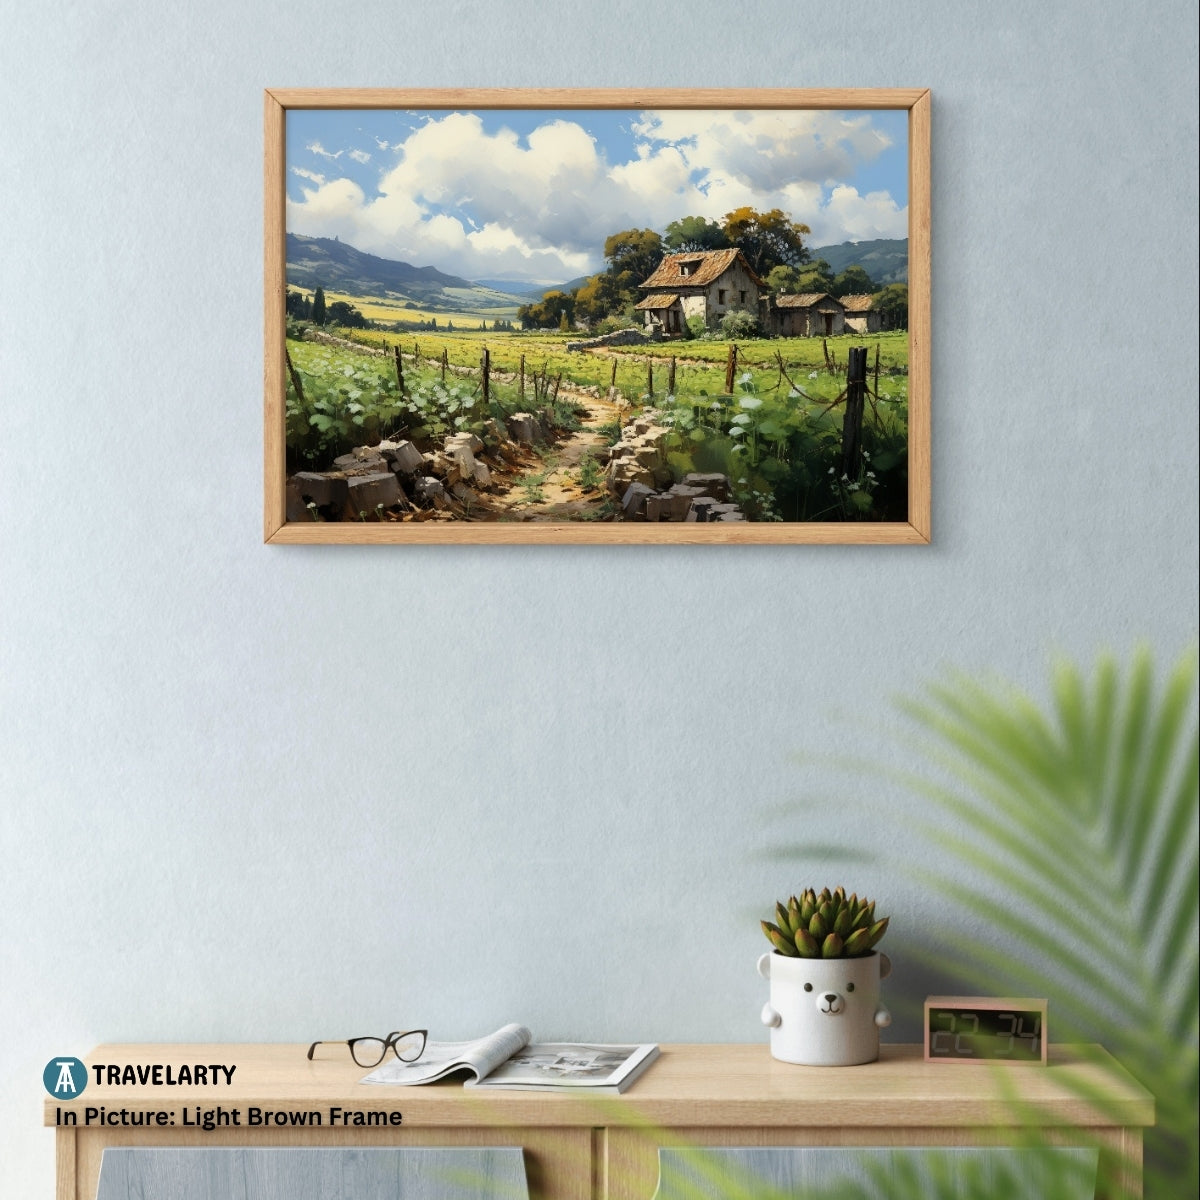 Napa Valley Vineyard Views Canvas Painting